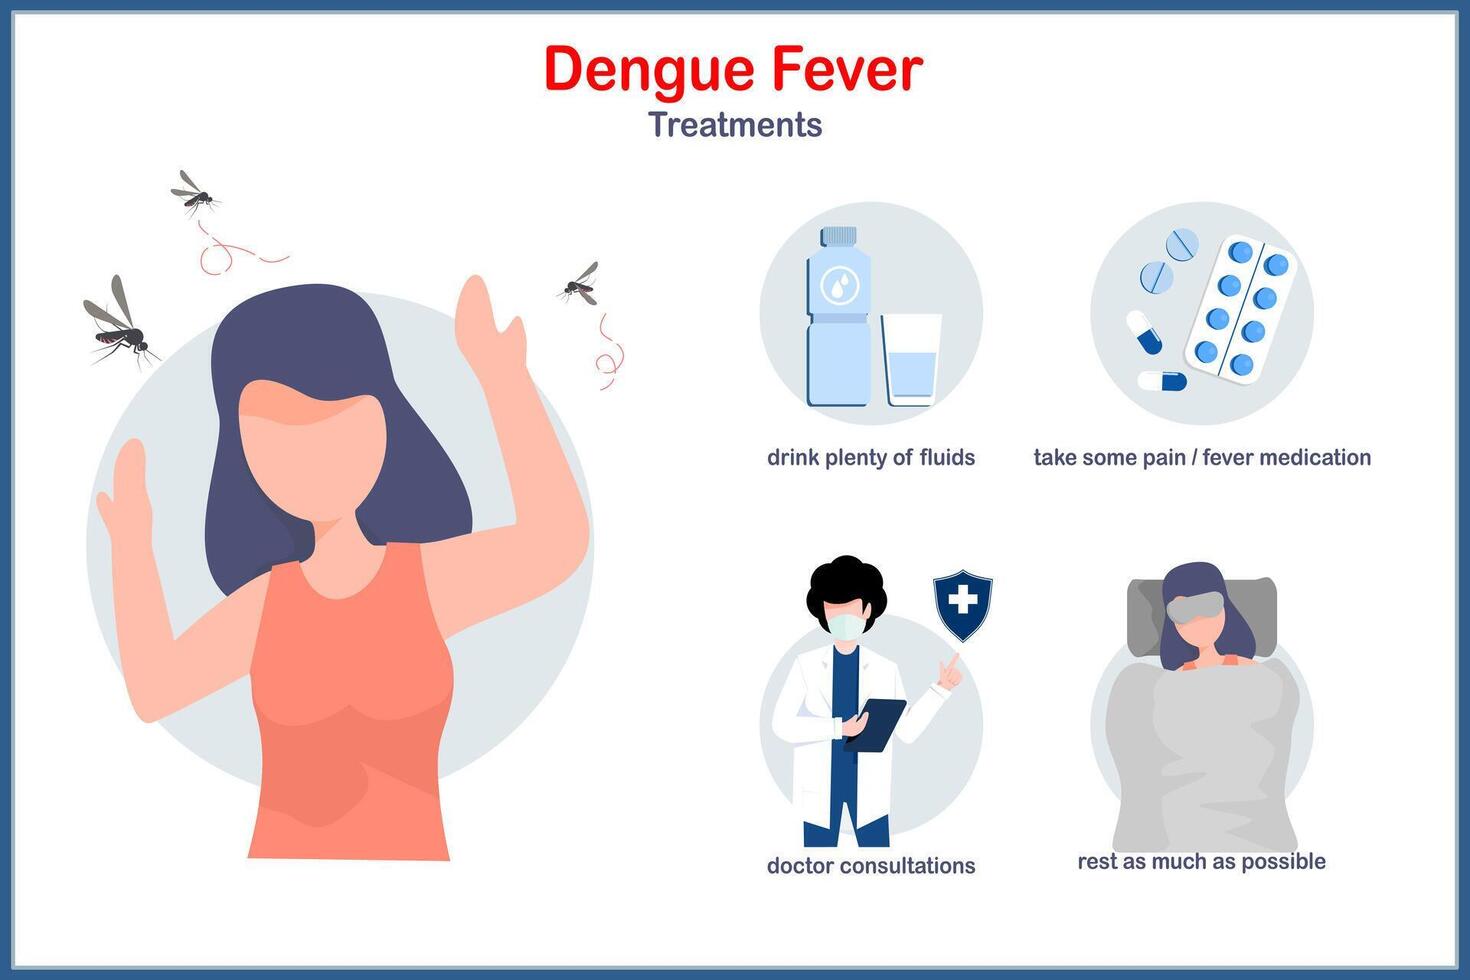 trattamento di dengue febbre.piatta medico illustrazione su concetto di trattamento per dengue febbre. potabile abbondanza di fluidi, medici consultazioni, riposo come tanto come possibile, prendi alcuni febbre medicazione vettore